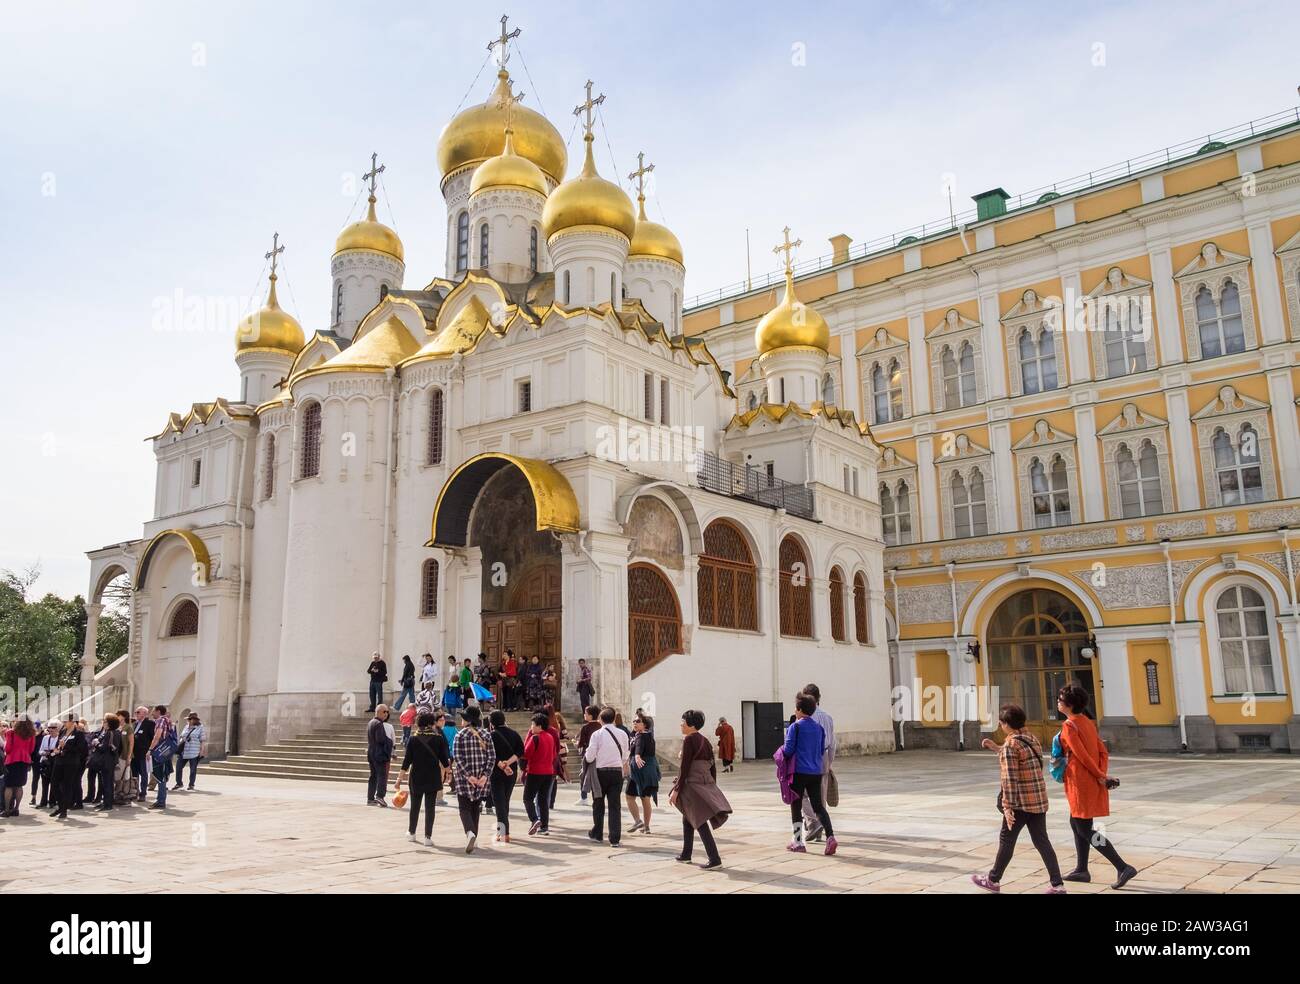 Turistas fuera de la Catedral de la Anunciación, Sobornaya Ploshad (Plaza de la Catedral), el Kremlin, Moscú, Rusia Foto de stock